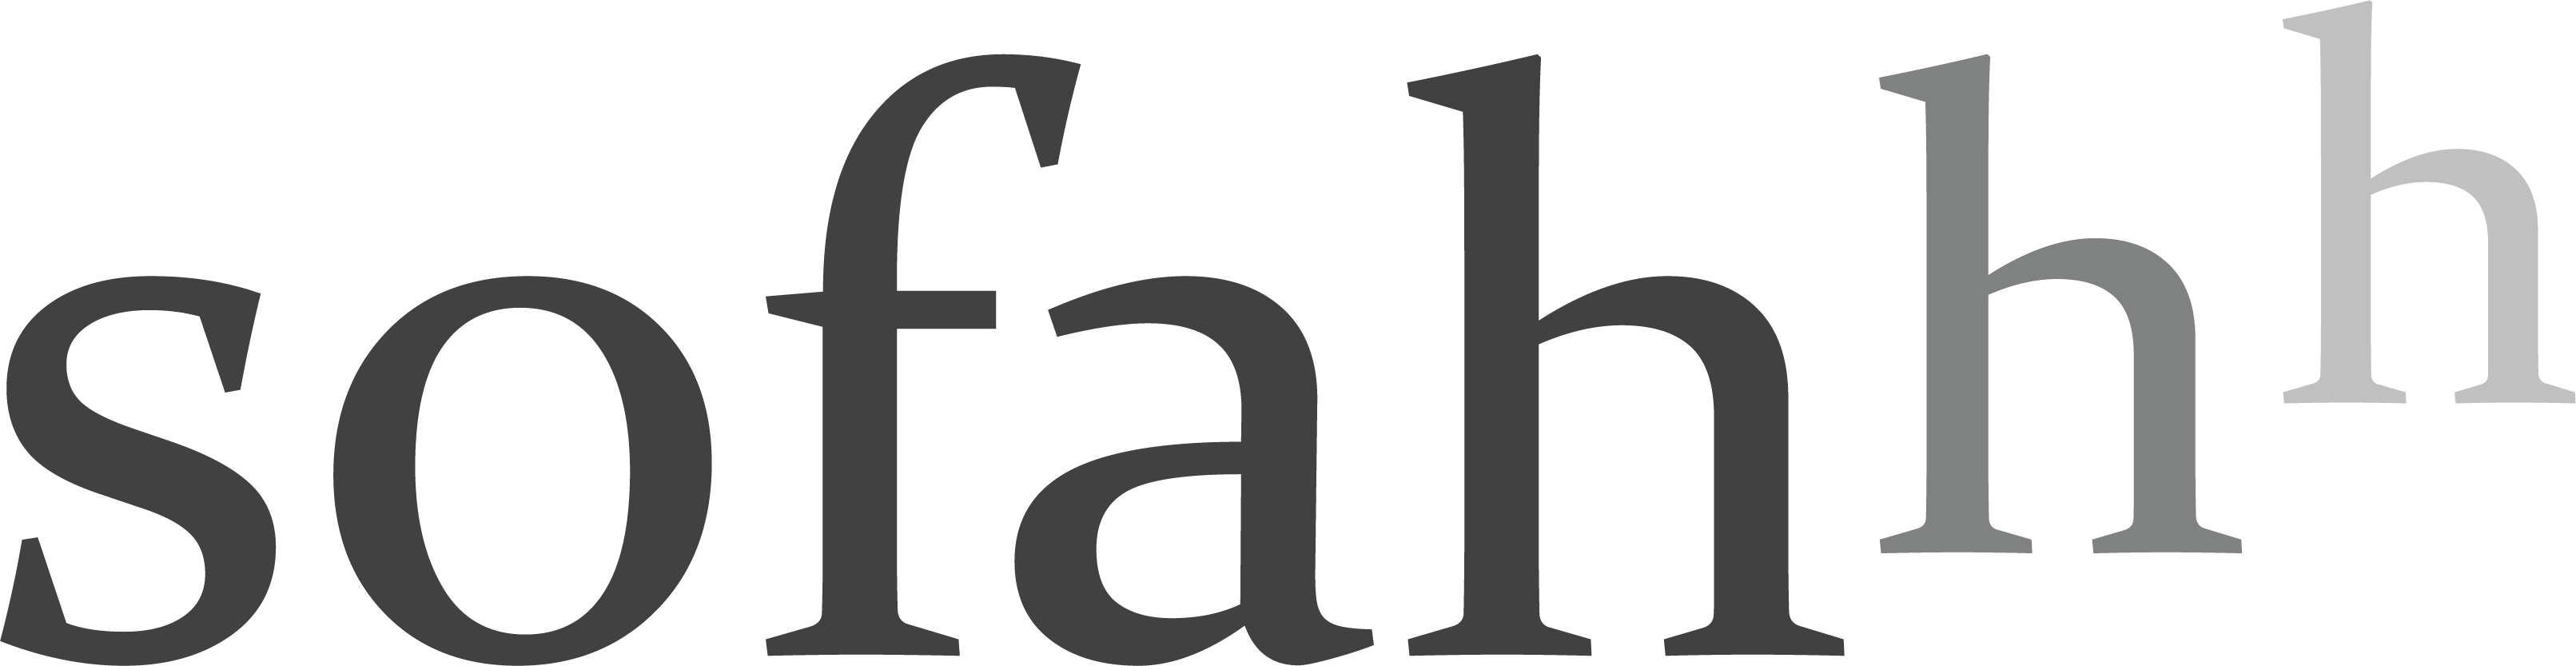 Sofahhh logo